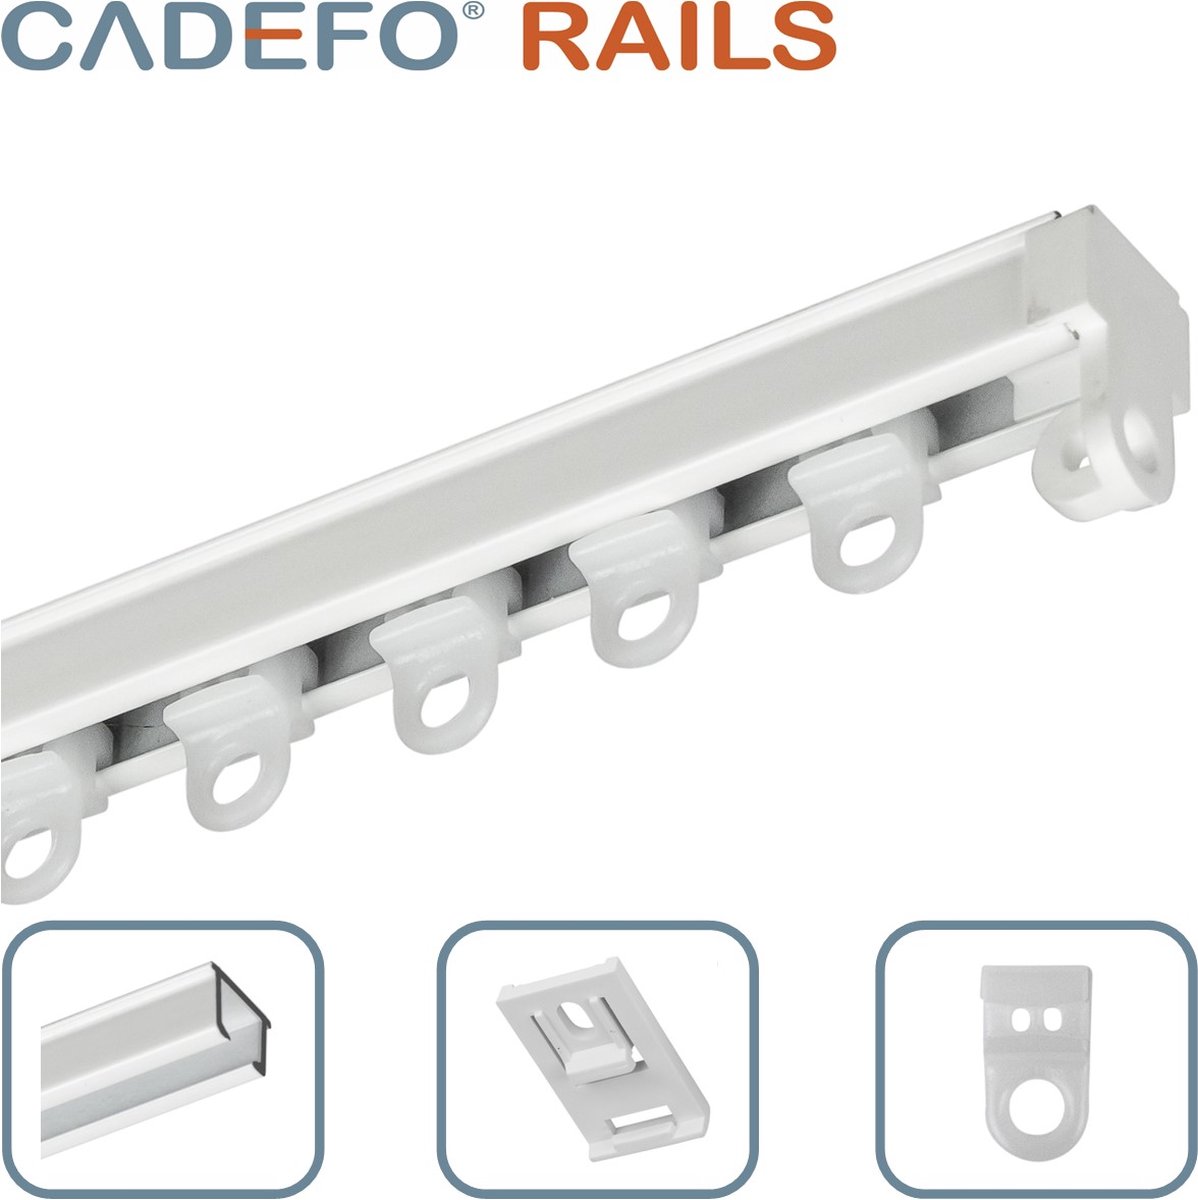 CADEFO RAILS (451 - 500 cm) Gordijnrails - Compleet op maat! - UIT 1 STUK - Leverbaar tot 6 meter - Plafondbevestiging - Lengte 479 cm